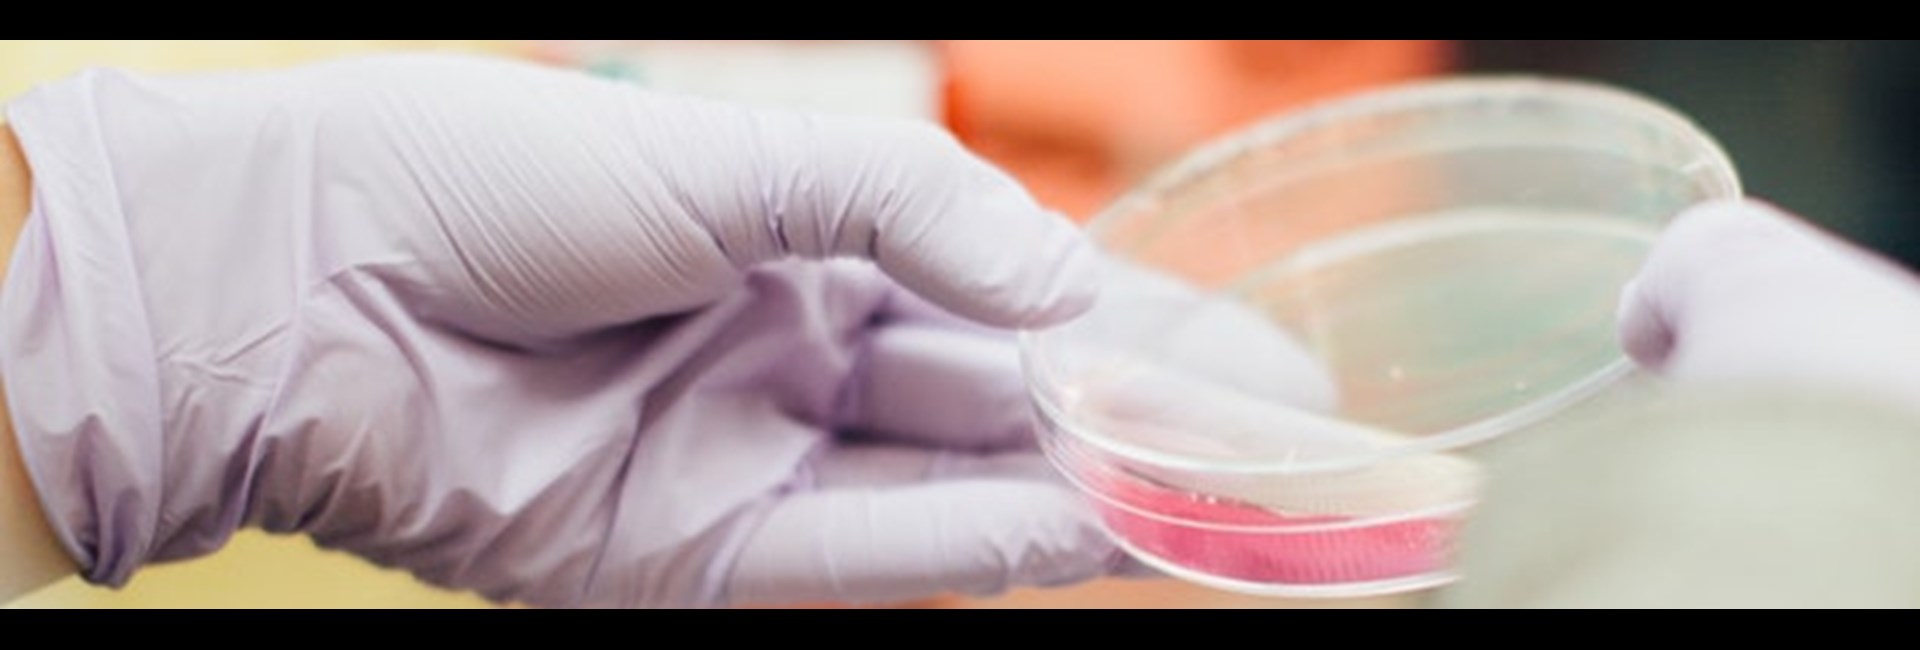 El método empleado permite a Ingenasa desarrollar los tests sin tener en el laboratorio presencia del coronavirus